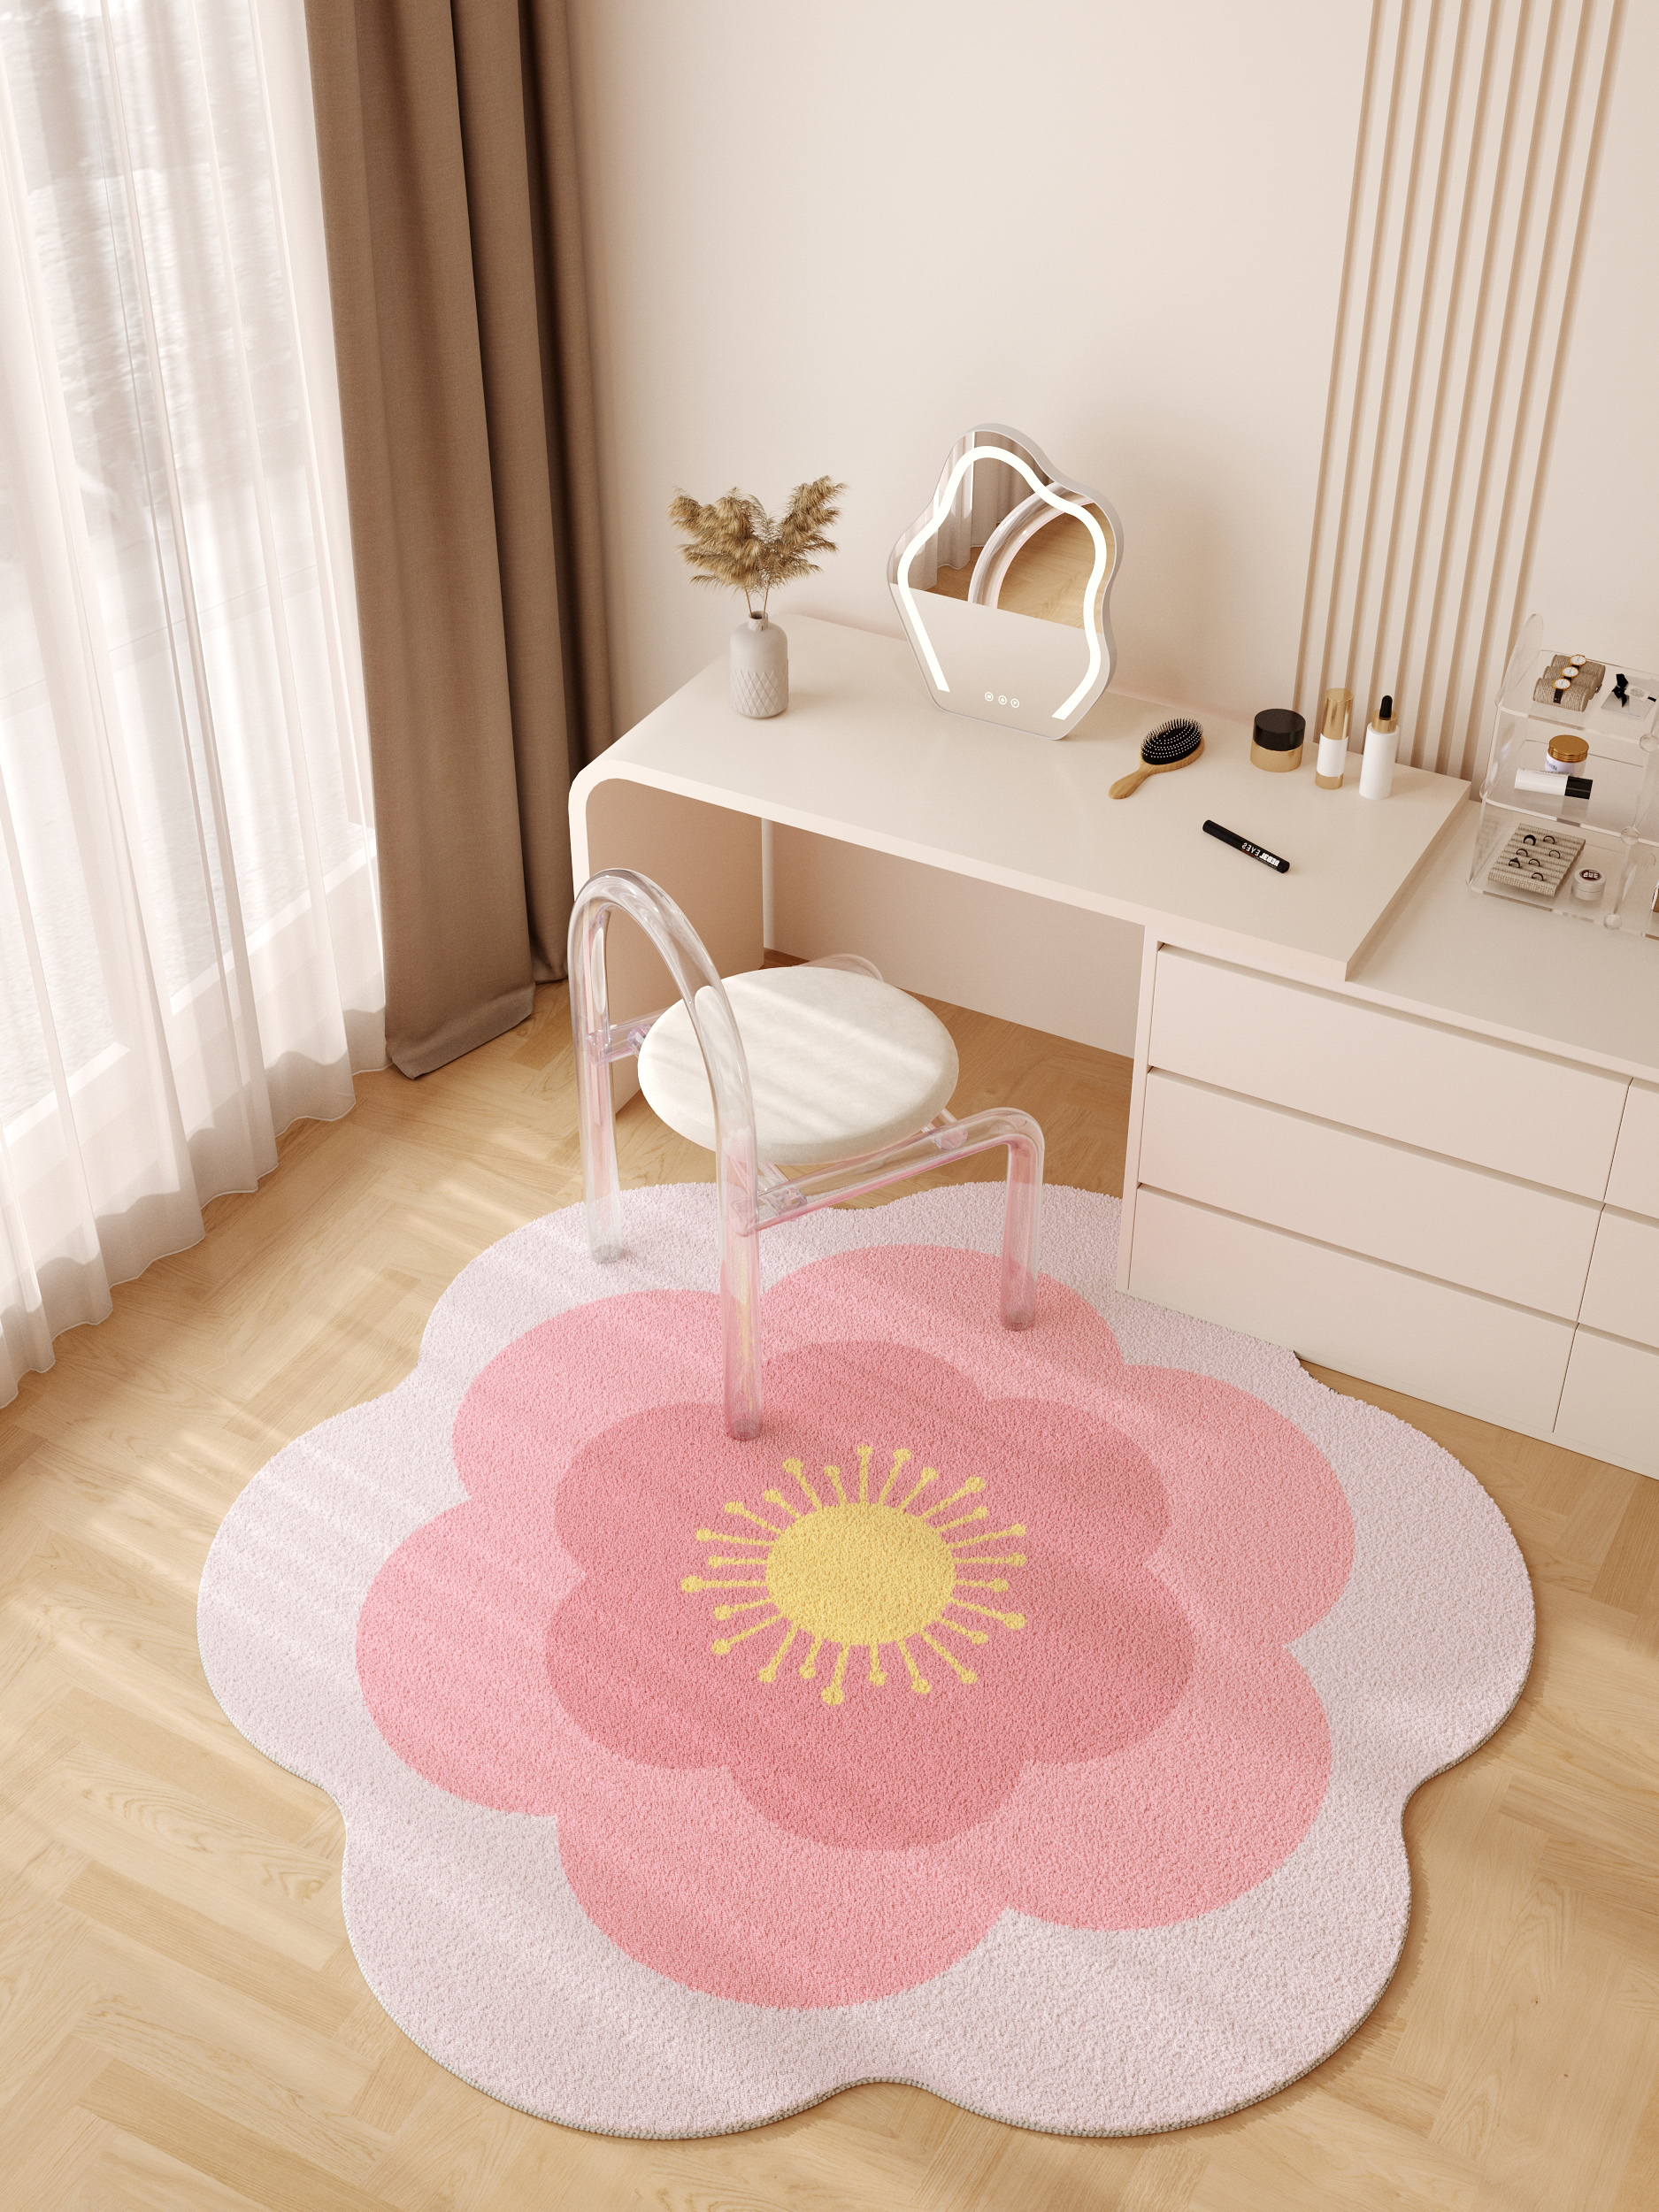 異形水洗羊羔絨地毯 現代簡約風格客廳臥室床邊衣帽間懶人沙發地墊 (1.3折)